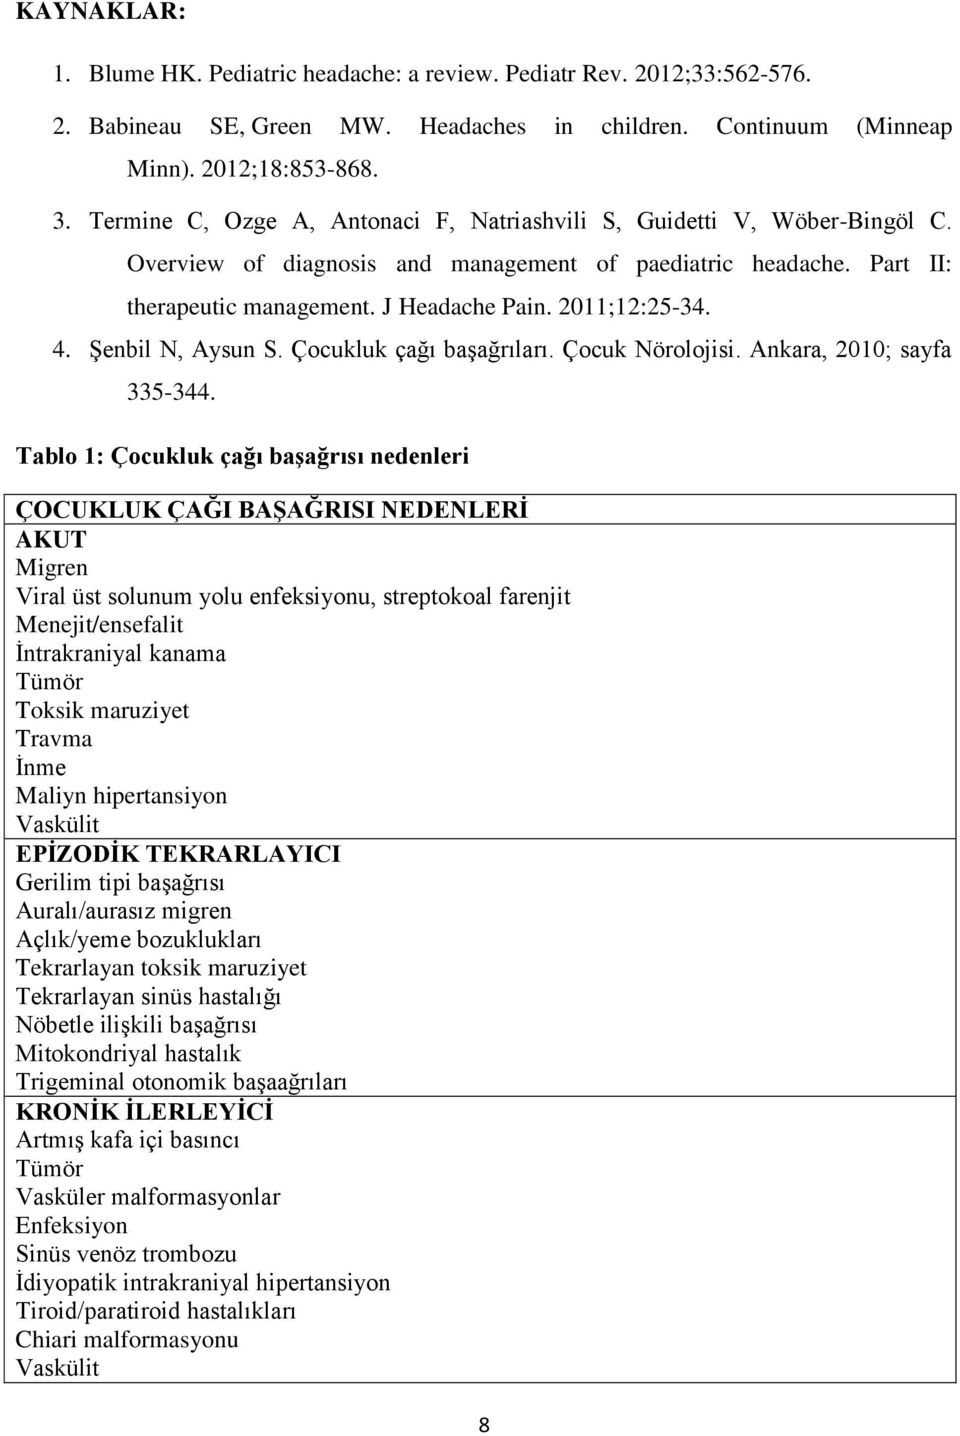 4. Şenbil N, Aysun S. Çocukluk çağı başağrıları. Çocuk Nörolojisi. Ankara, 2010; sayfa 335-344.